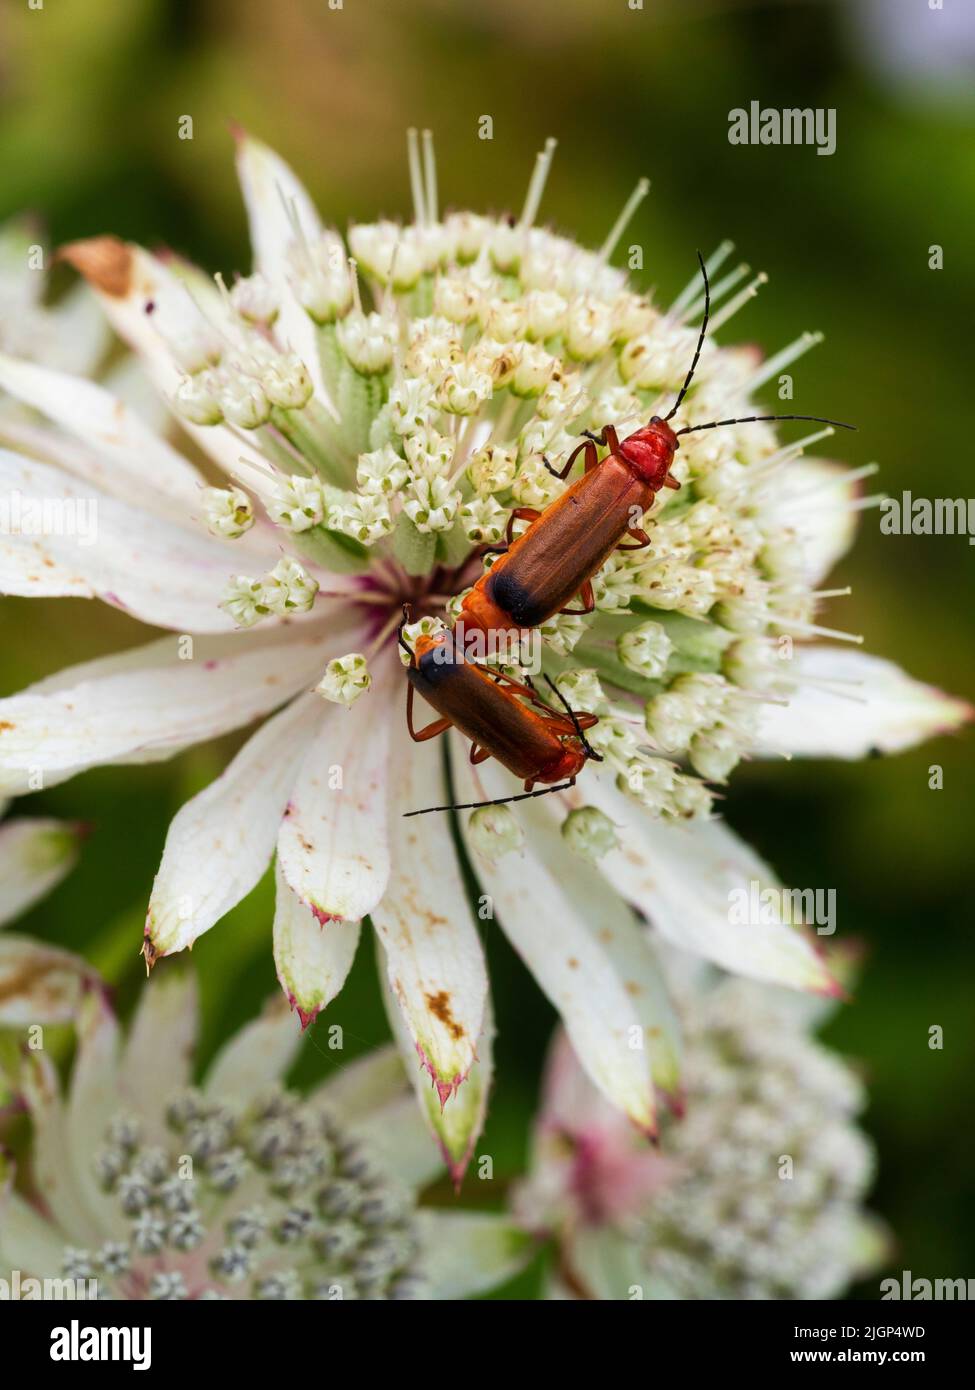 Escarabajos soldados anaranjados, Rhagonycha fulva, apareamiento sobre una cabeza de flor de la maestra perenne resistente, Astrantia Major Foto de stock